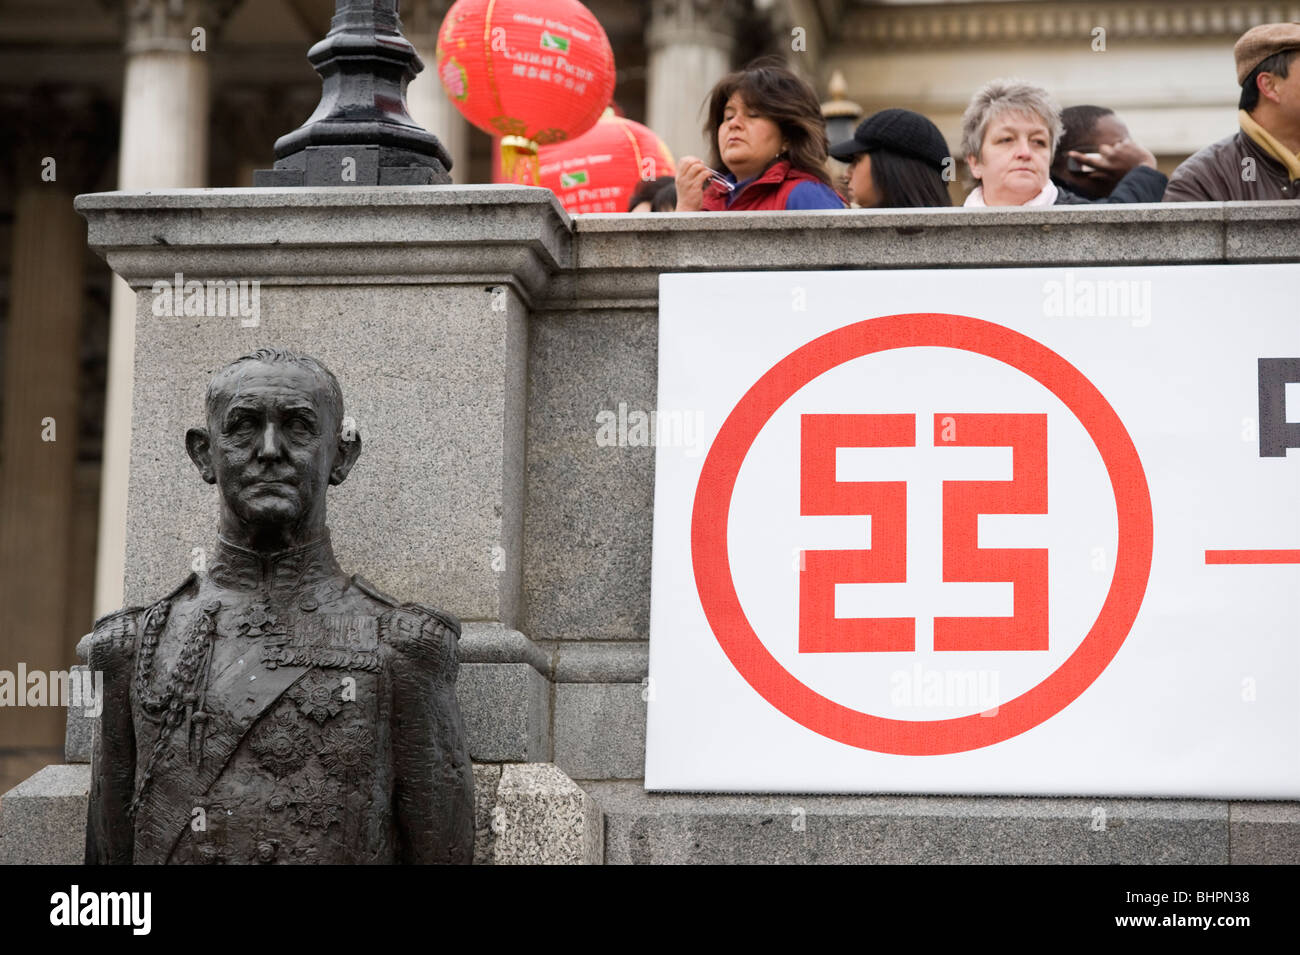 La estatua, la gente y el símbolo chino en un banner en las celebraciones del Año Nuevo Chino en Trafalgar Square, Londres, Gran Bretaña. Foto de stock